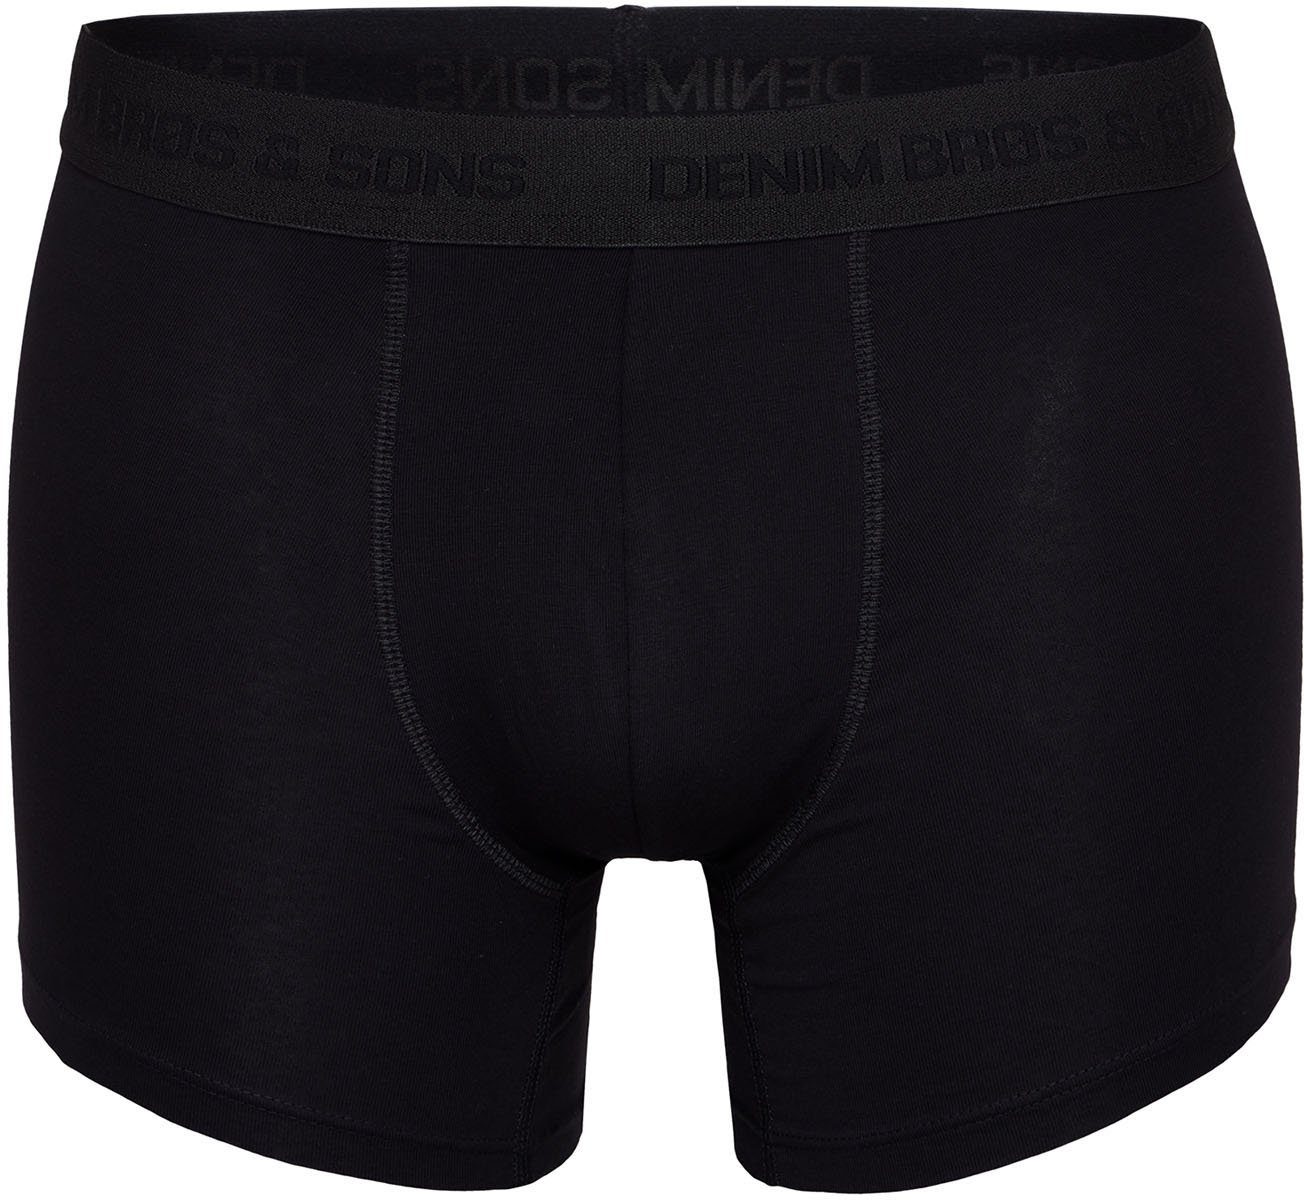 MG-1 Retro (8-St) boxershorts Retro-Boxer all retroshorts black Colors Mix Boxer